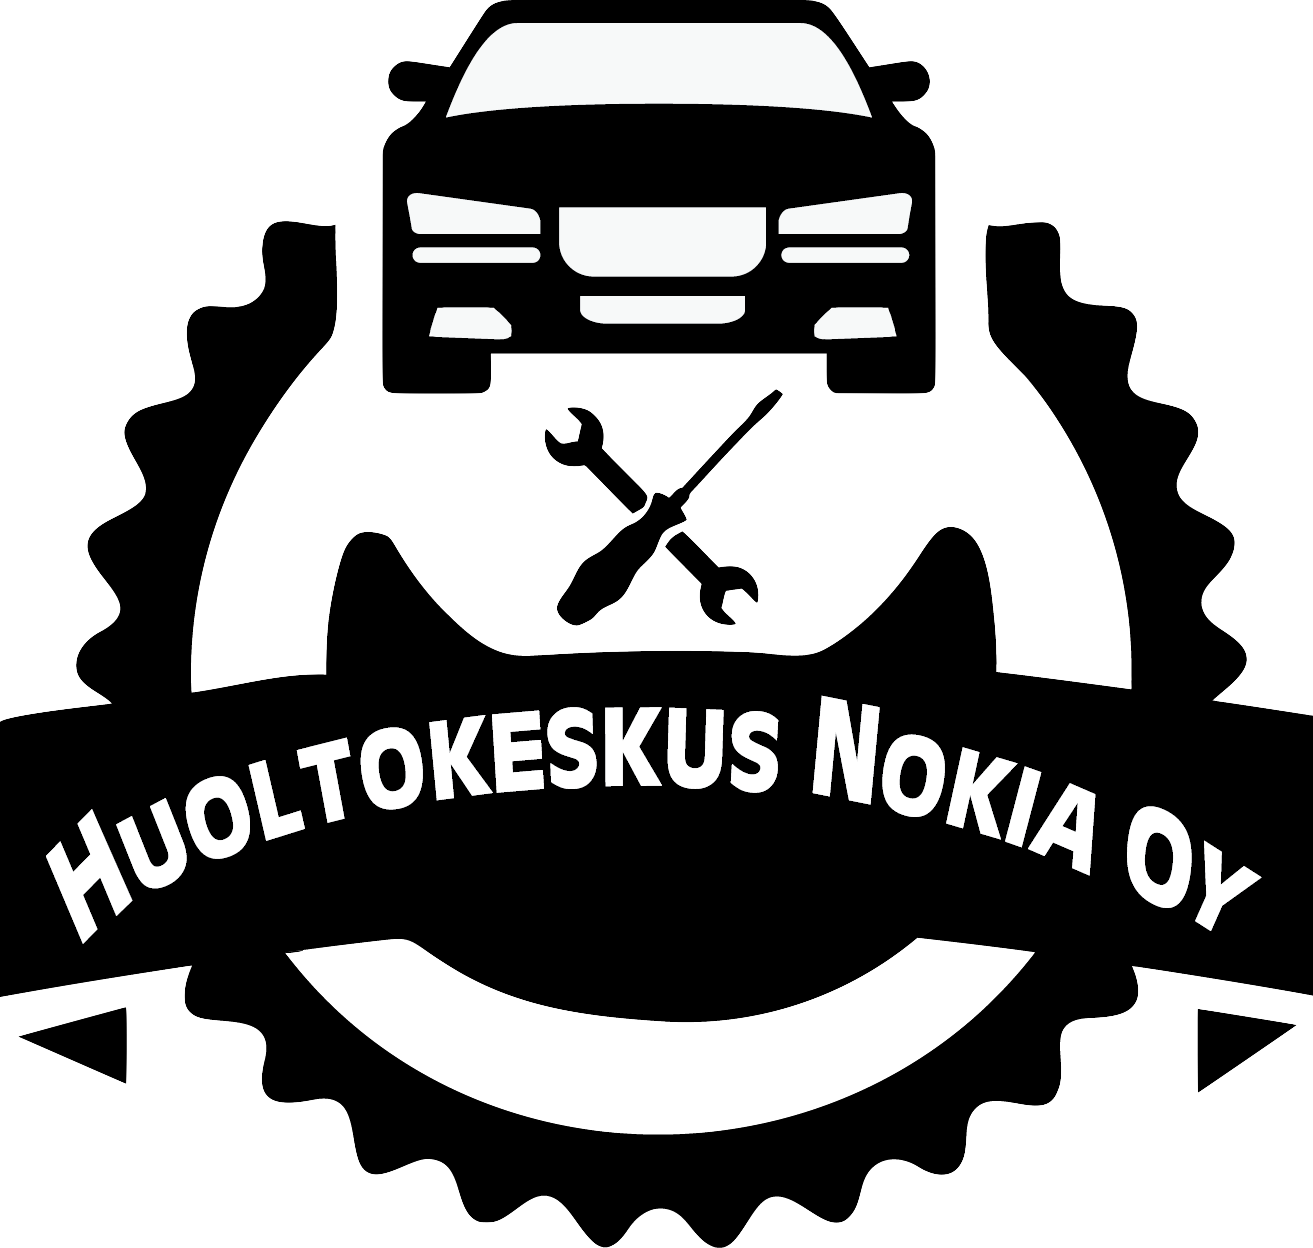 Huoltokeskus Nokia